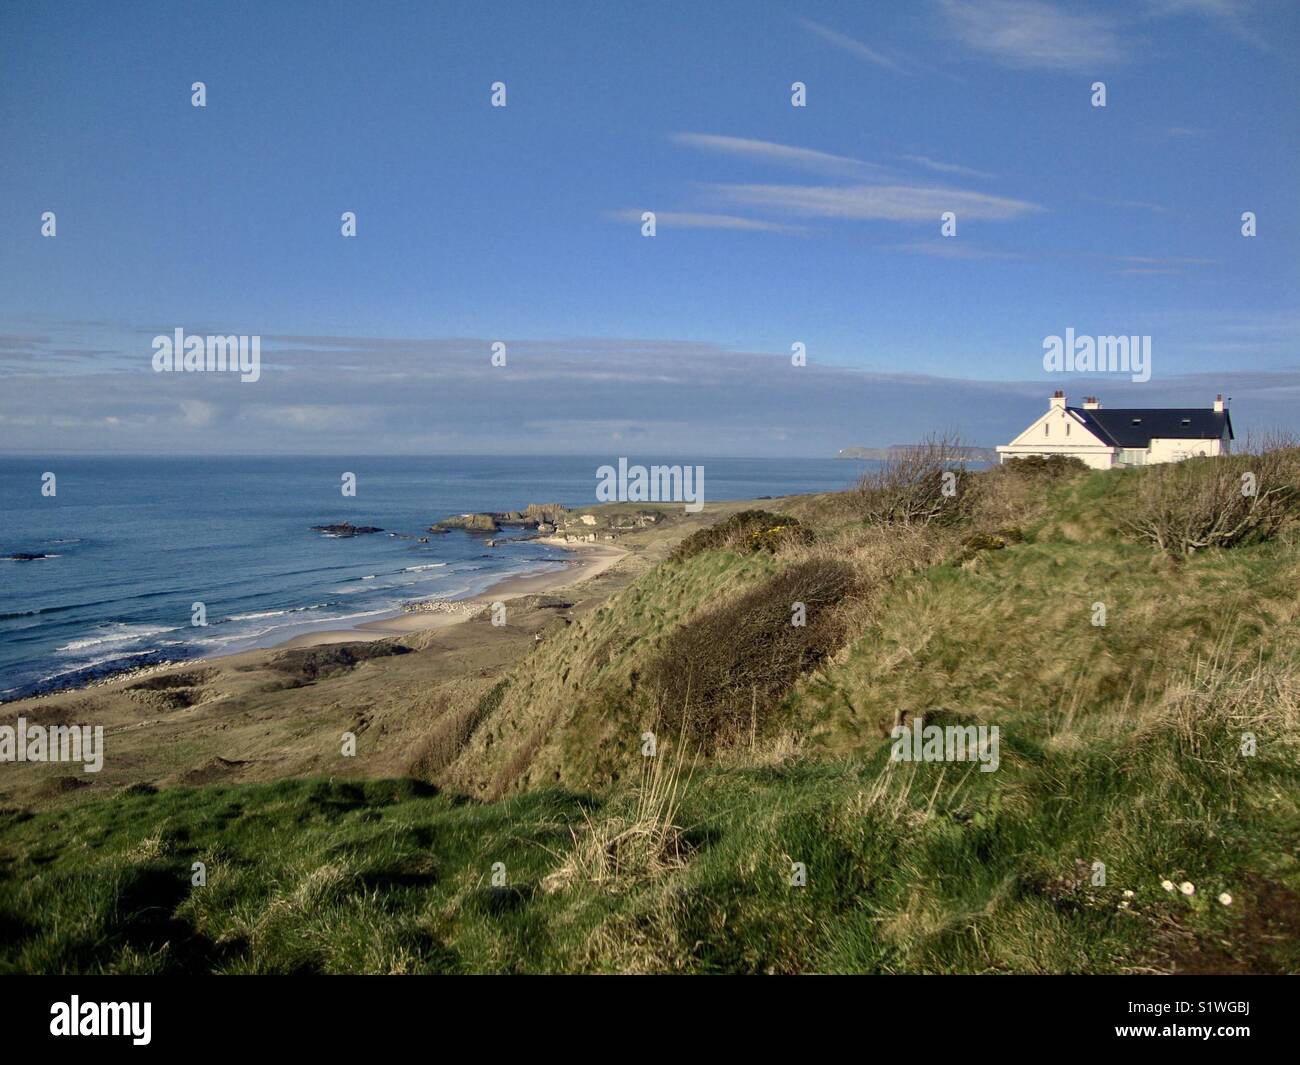 House on hilltop near Northern Ireland coastal area Stock Photo